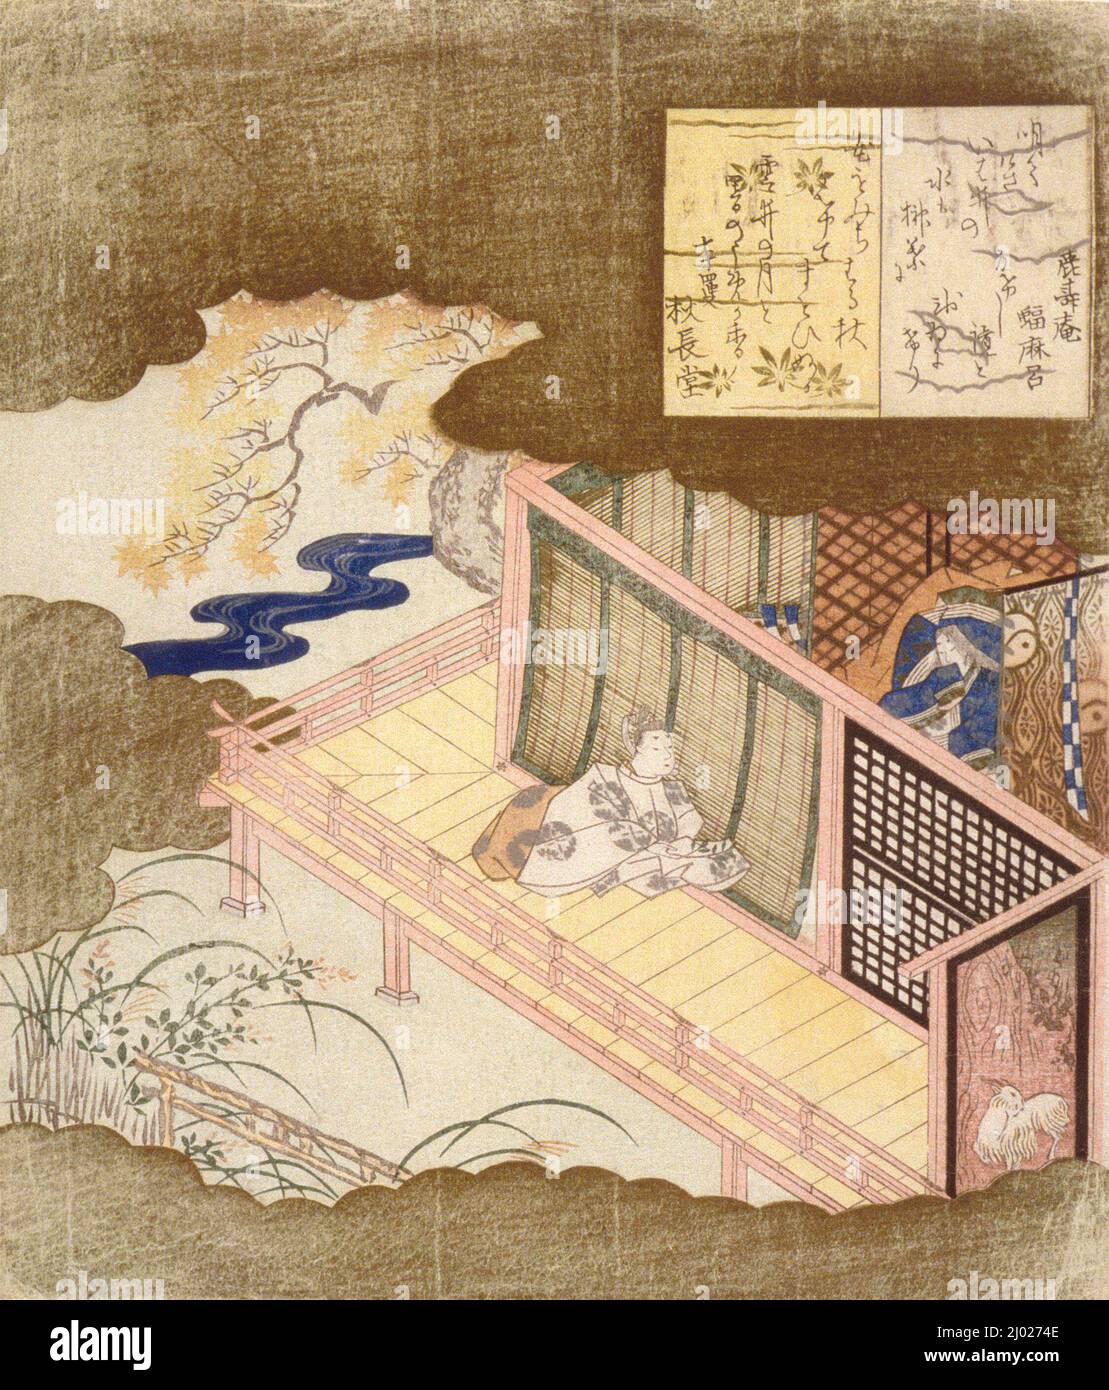 Los amantes de la corte intercambian poemas. Kubo Shunman (Japón, Tokio, 1757-1820). Japón, alrededor de 1811. Impresiones; bloques de madera. Estampado de bloques de madera en color; surimono Foto de stock